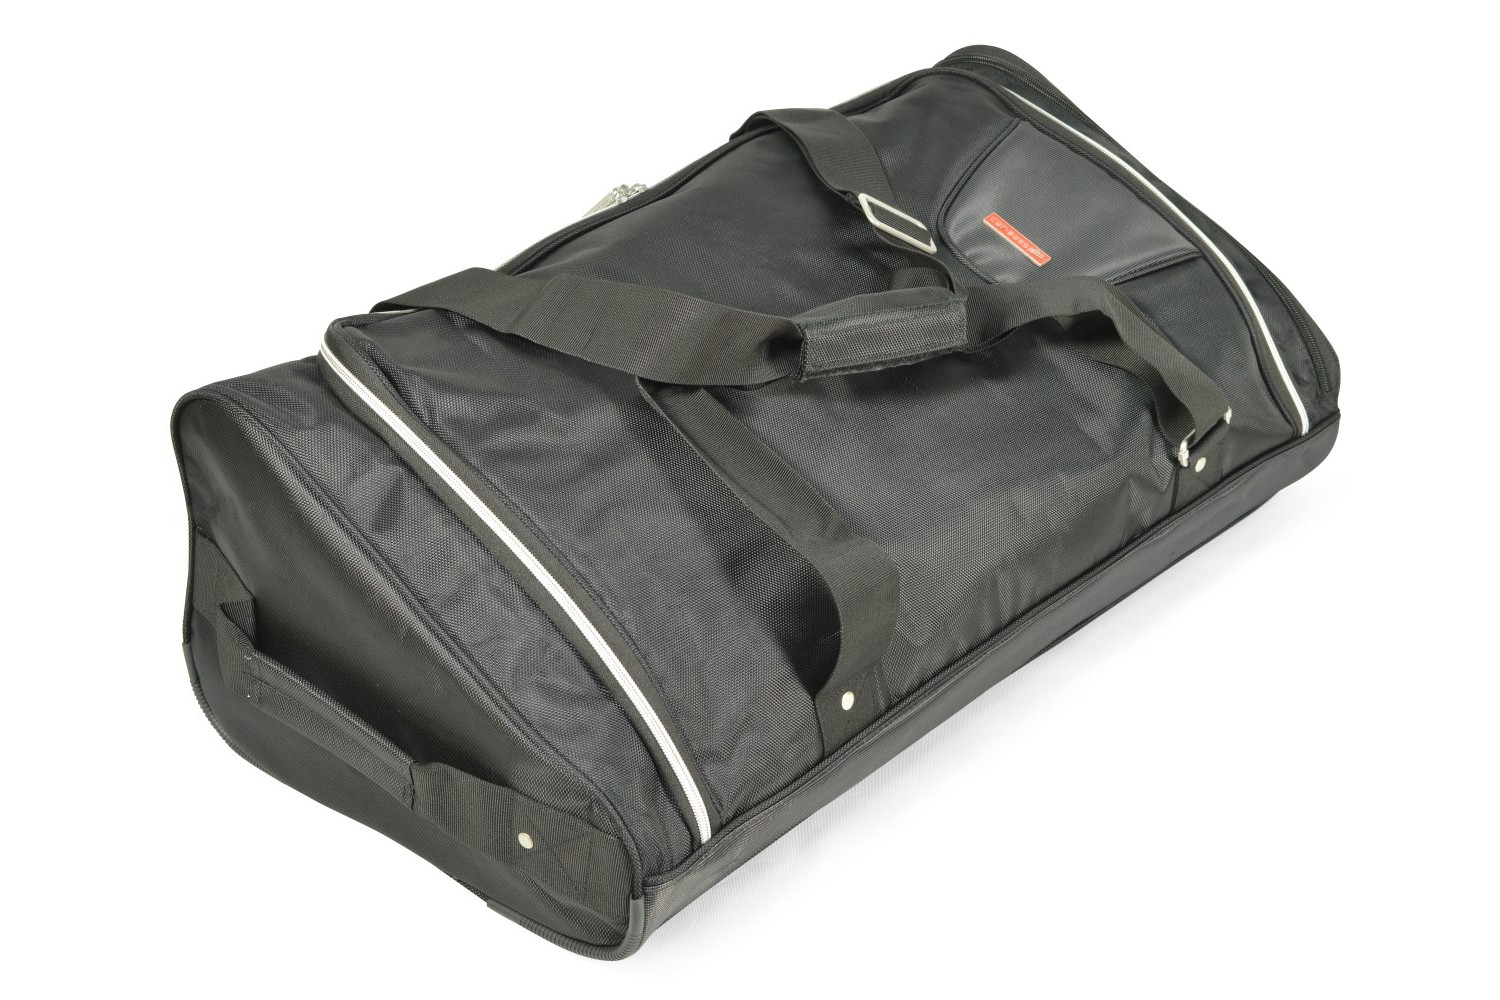 Travel bag - 32 x 16-23 x 75 cm (WxHxL)